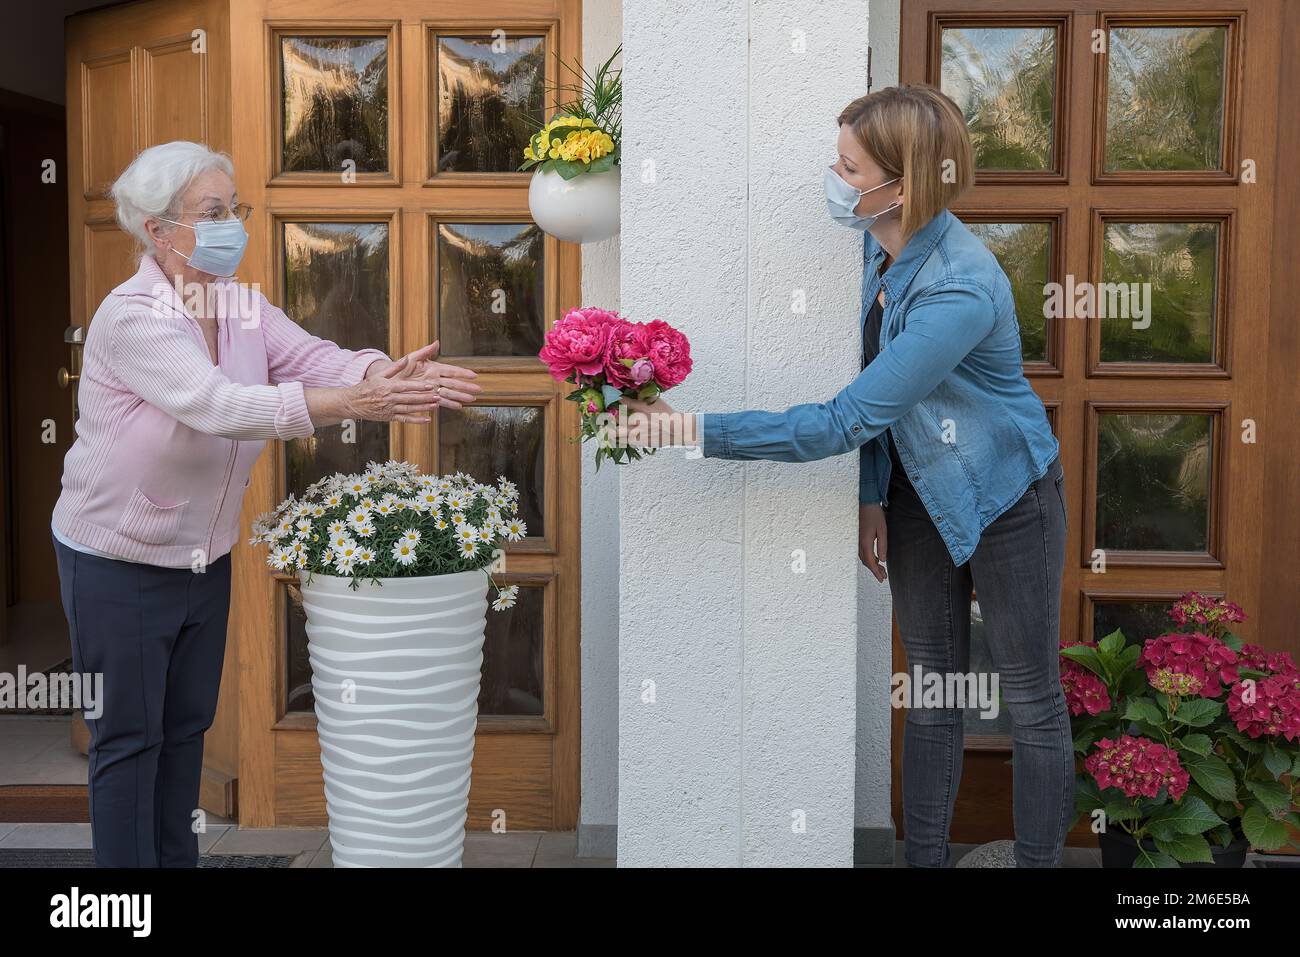 Donna anziana con maschera facciale ottiene fiori da donna vicina con maschera facciale Foto Stock